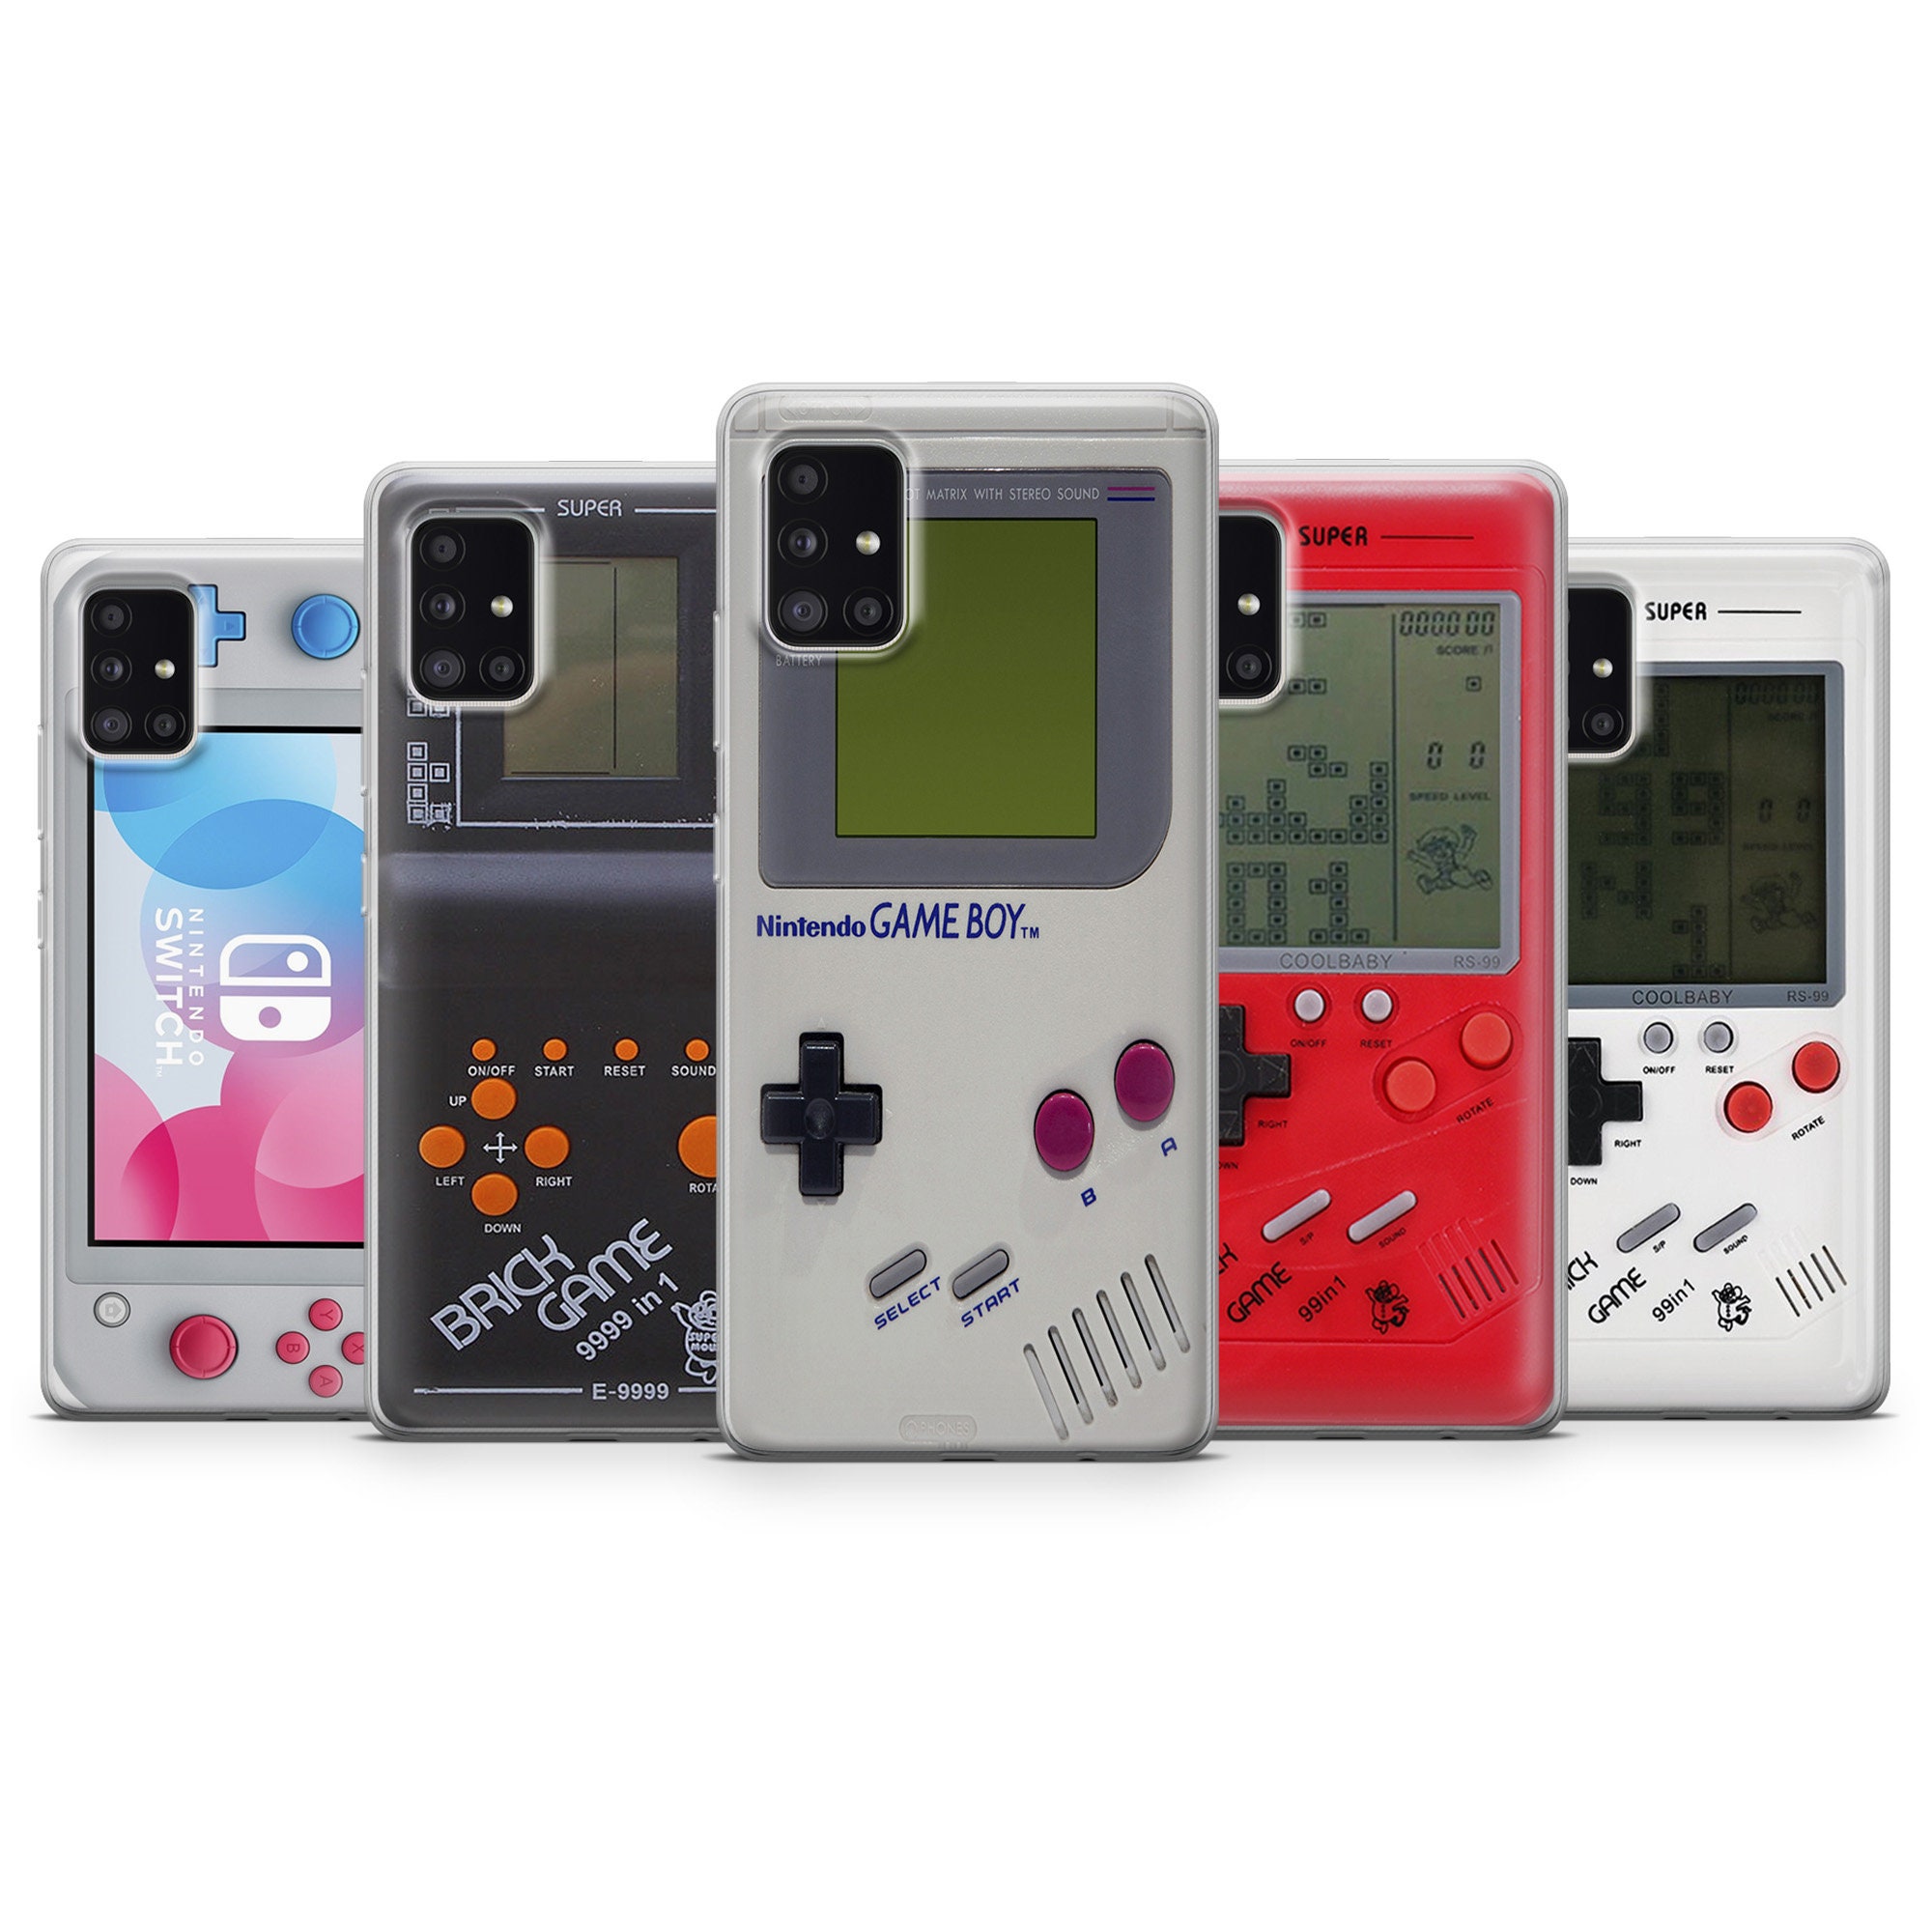 Yêu thích game Tetris và muốn trang trí cho chiếc điện thoại của mình với những hình ảnh lô-gô game này? Hãy sở hữu ngay chiếc ốp lưng điện thoại Nintendo Tetris phù hợp cho Samsung S23 S22 từ Etsy để thể hiện đẳng cấp và phong cách của bạn.